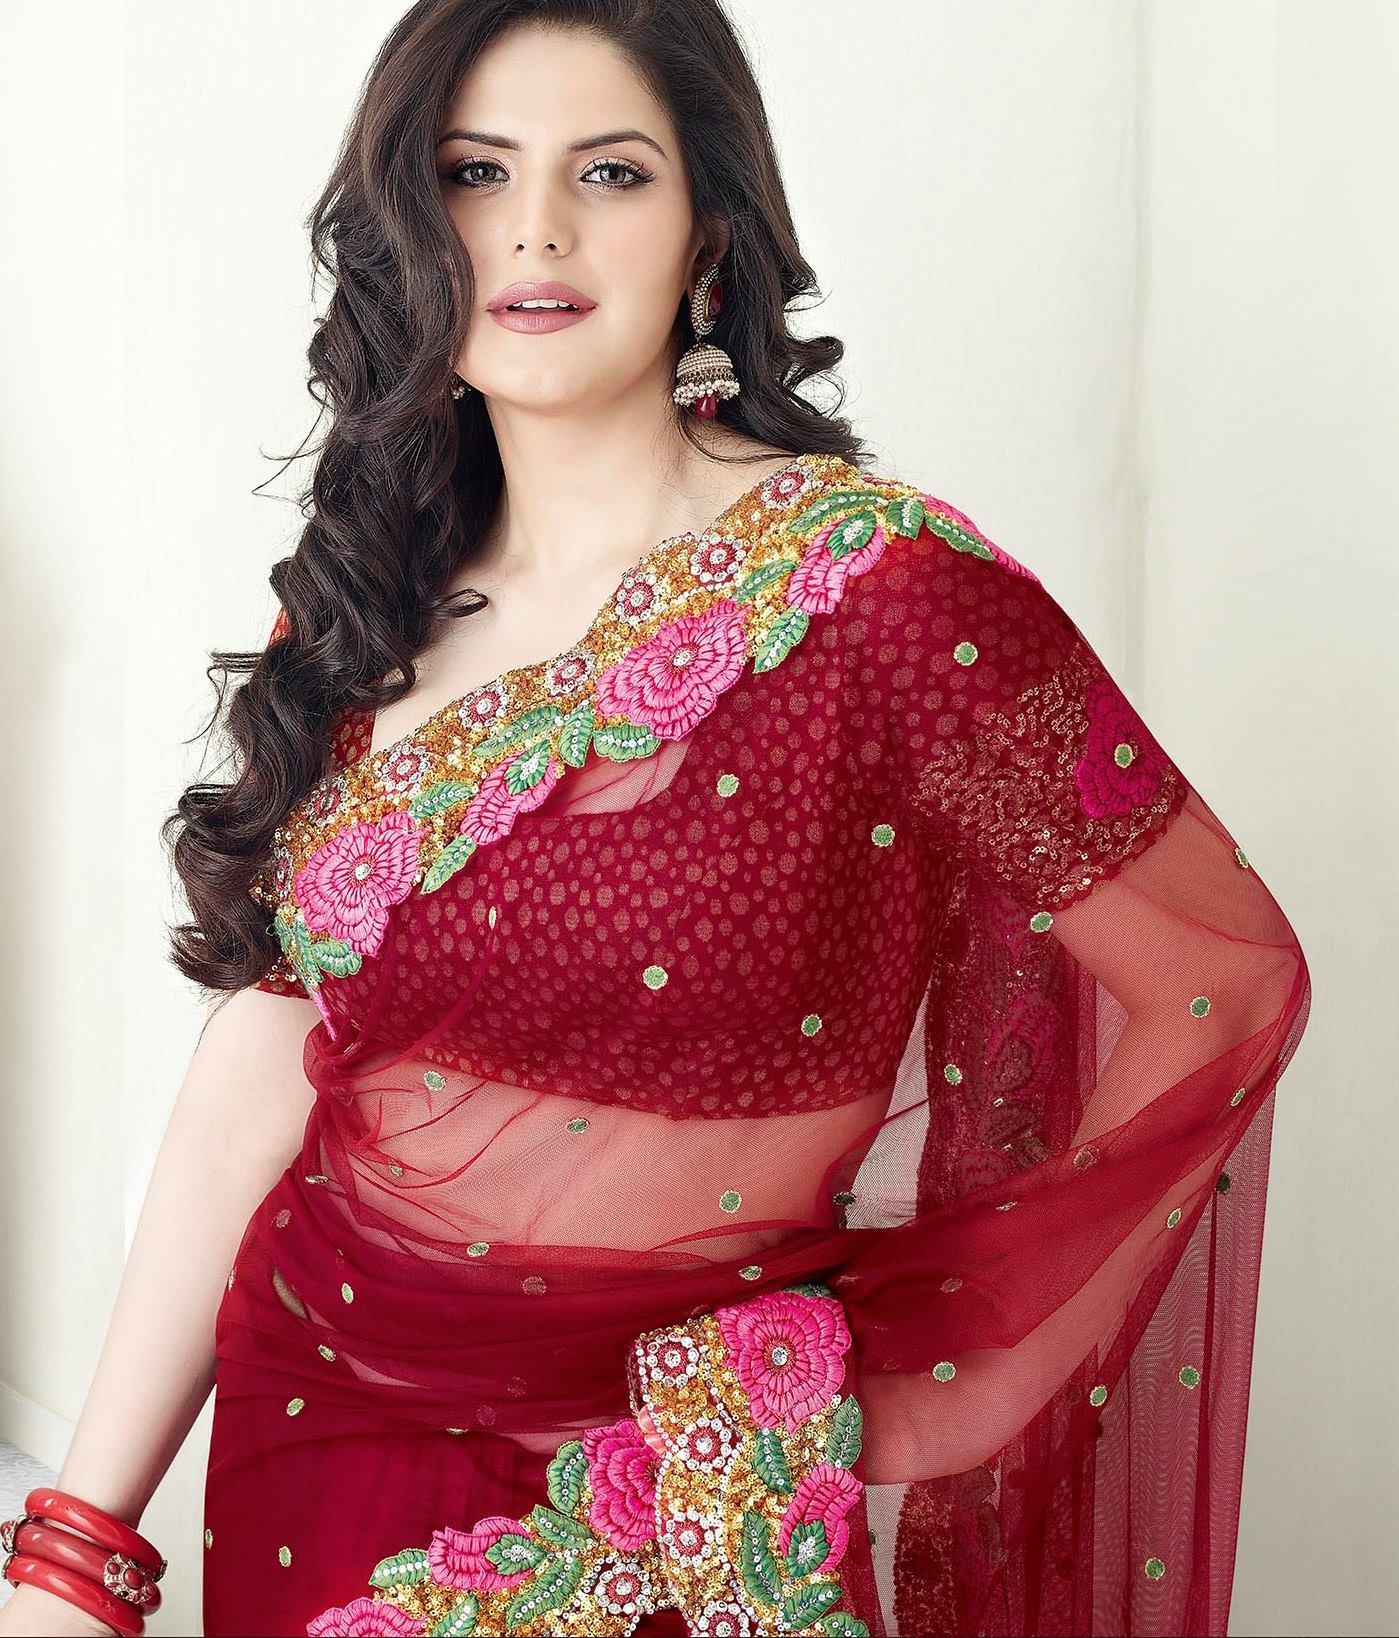 Sari Wallpapers - Top Free Sari Backgrounds - WallpaperAccess